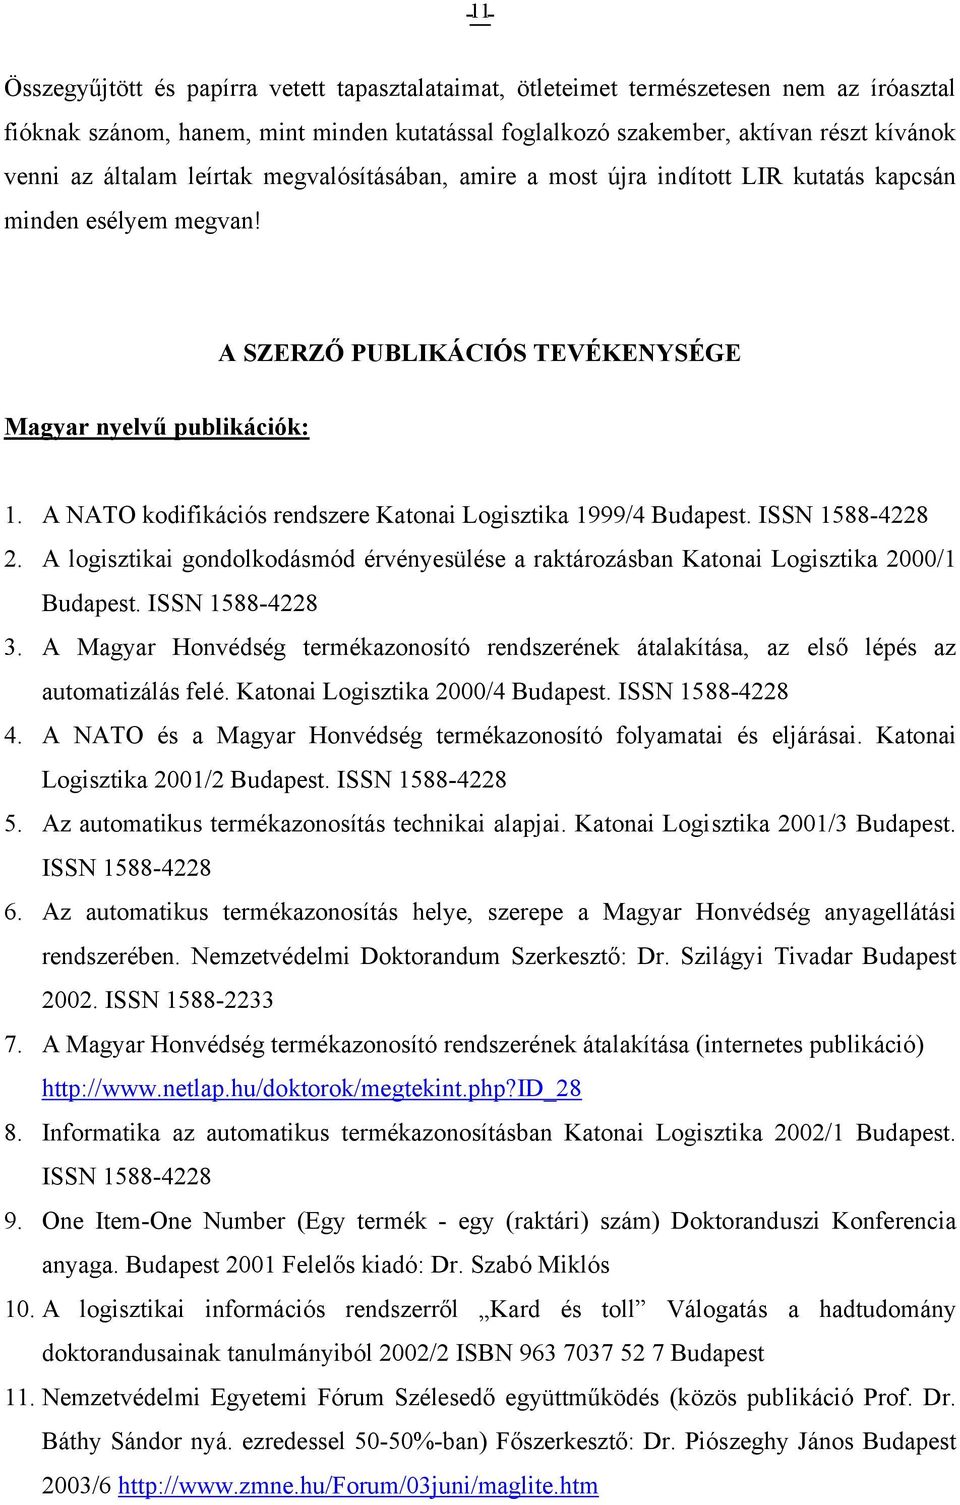 A NATO kodifikációs rendszere Katonai Logisztika 1999/4 Budapest. ISSN 1588-4228 2. A logisztikai gondolkodásmód érvényesülése a raktározásban Katonai Logisztika 2000/1 Budapest. ISSN 1588-4228 3.